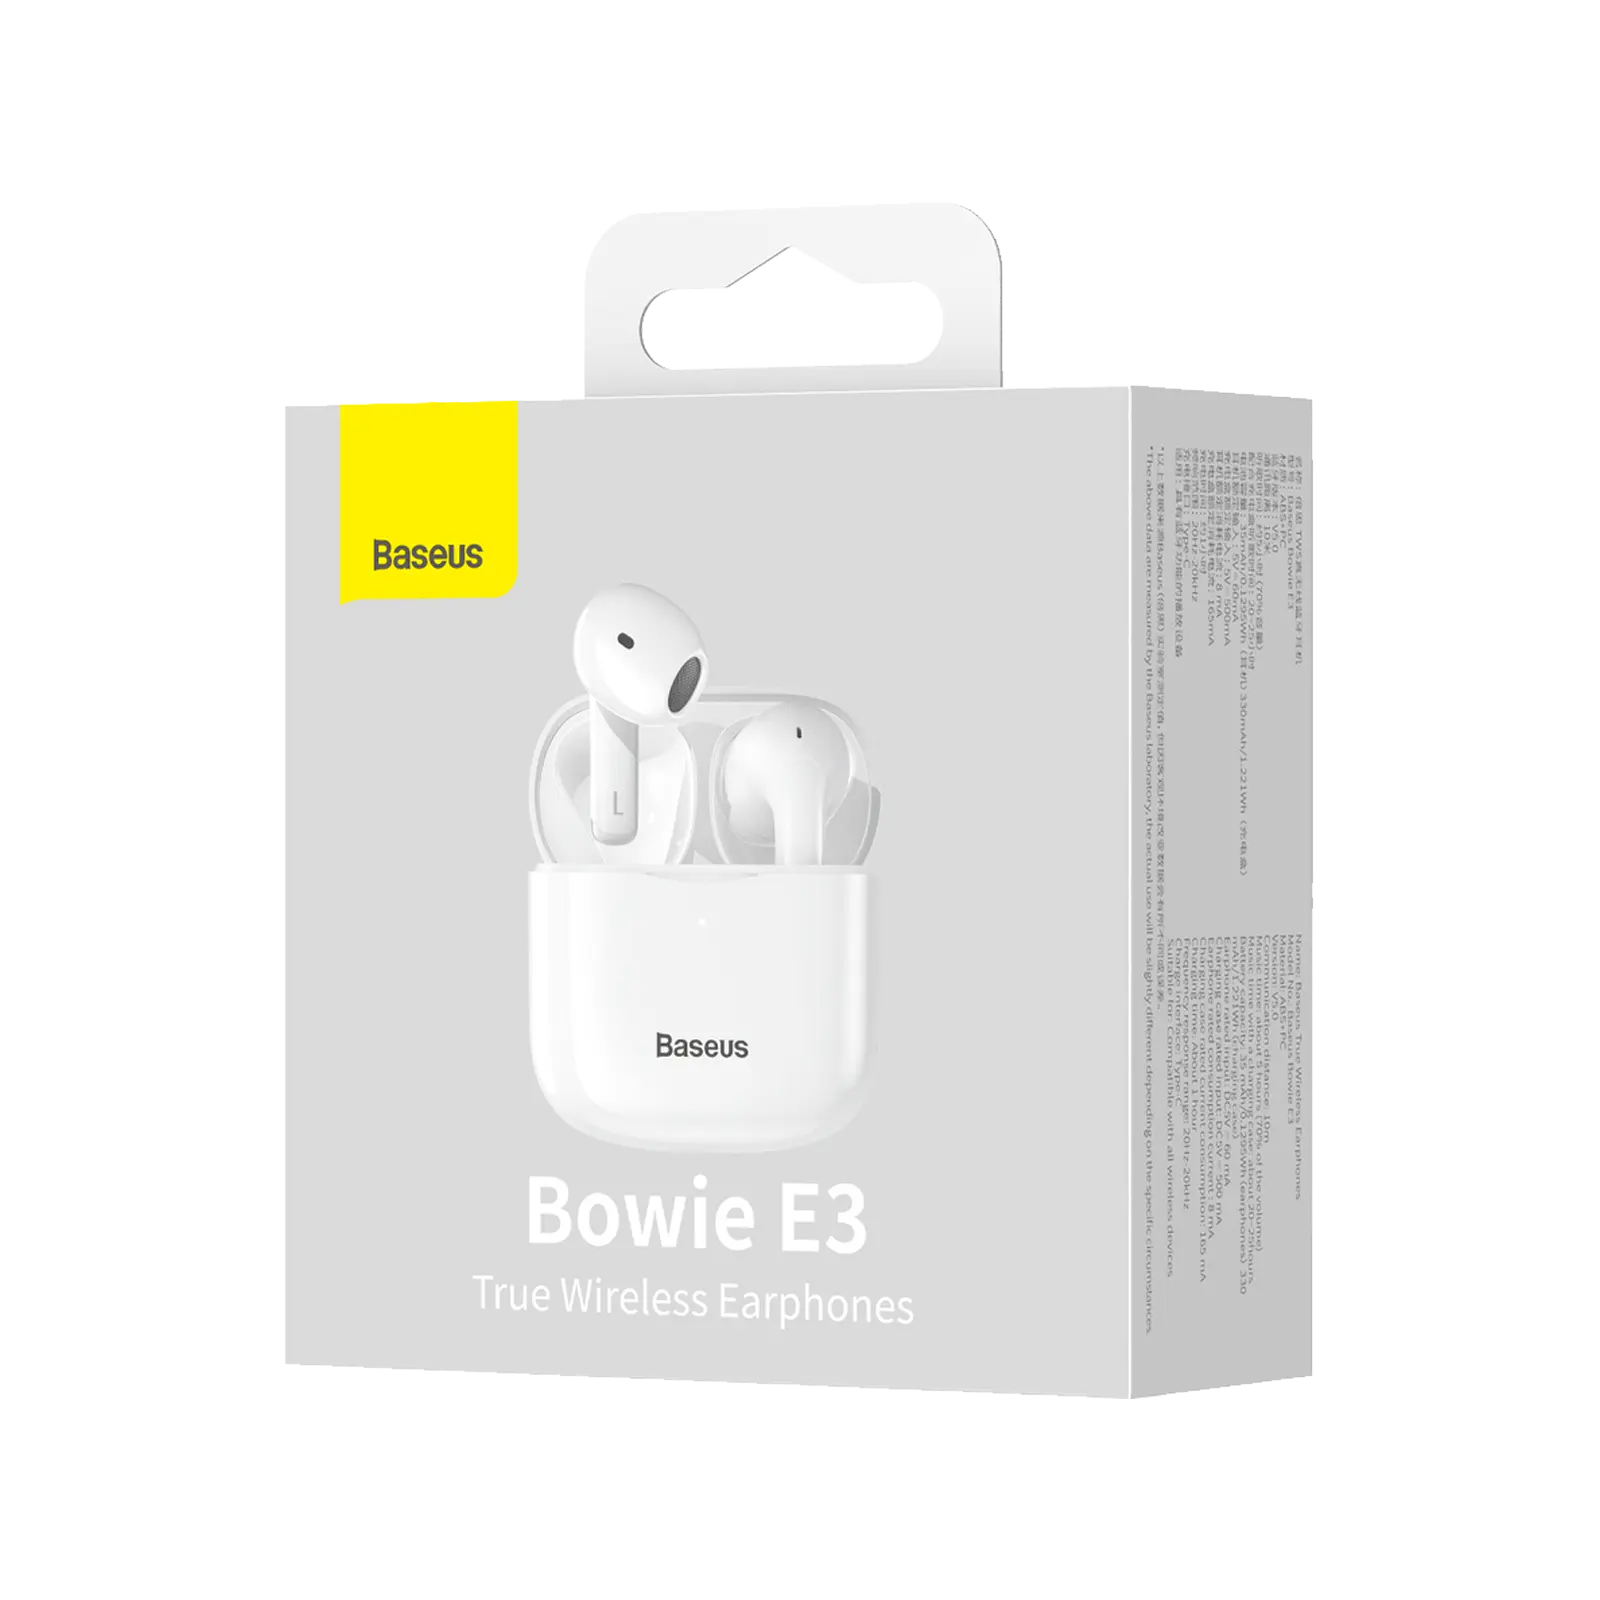 Słuchawki True Wireless Baseus Bowie E3 od Baseus w SimplyBuy.pl